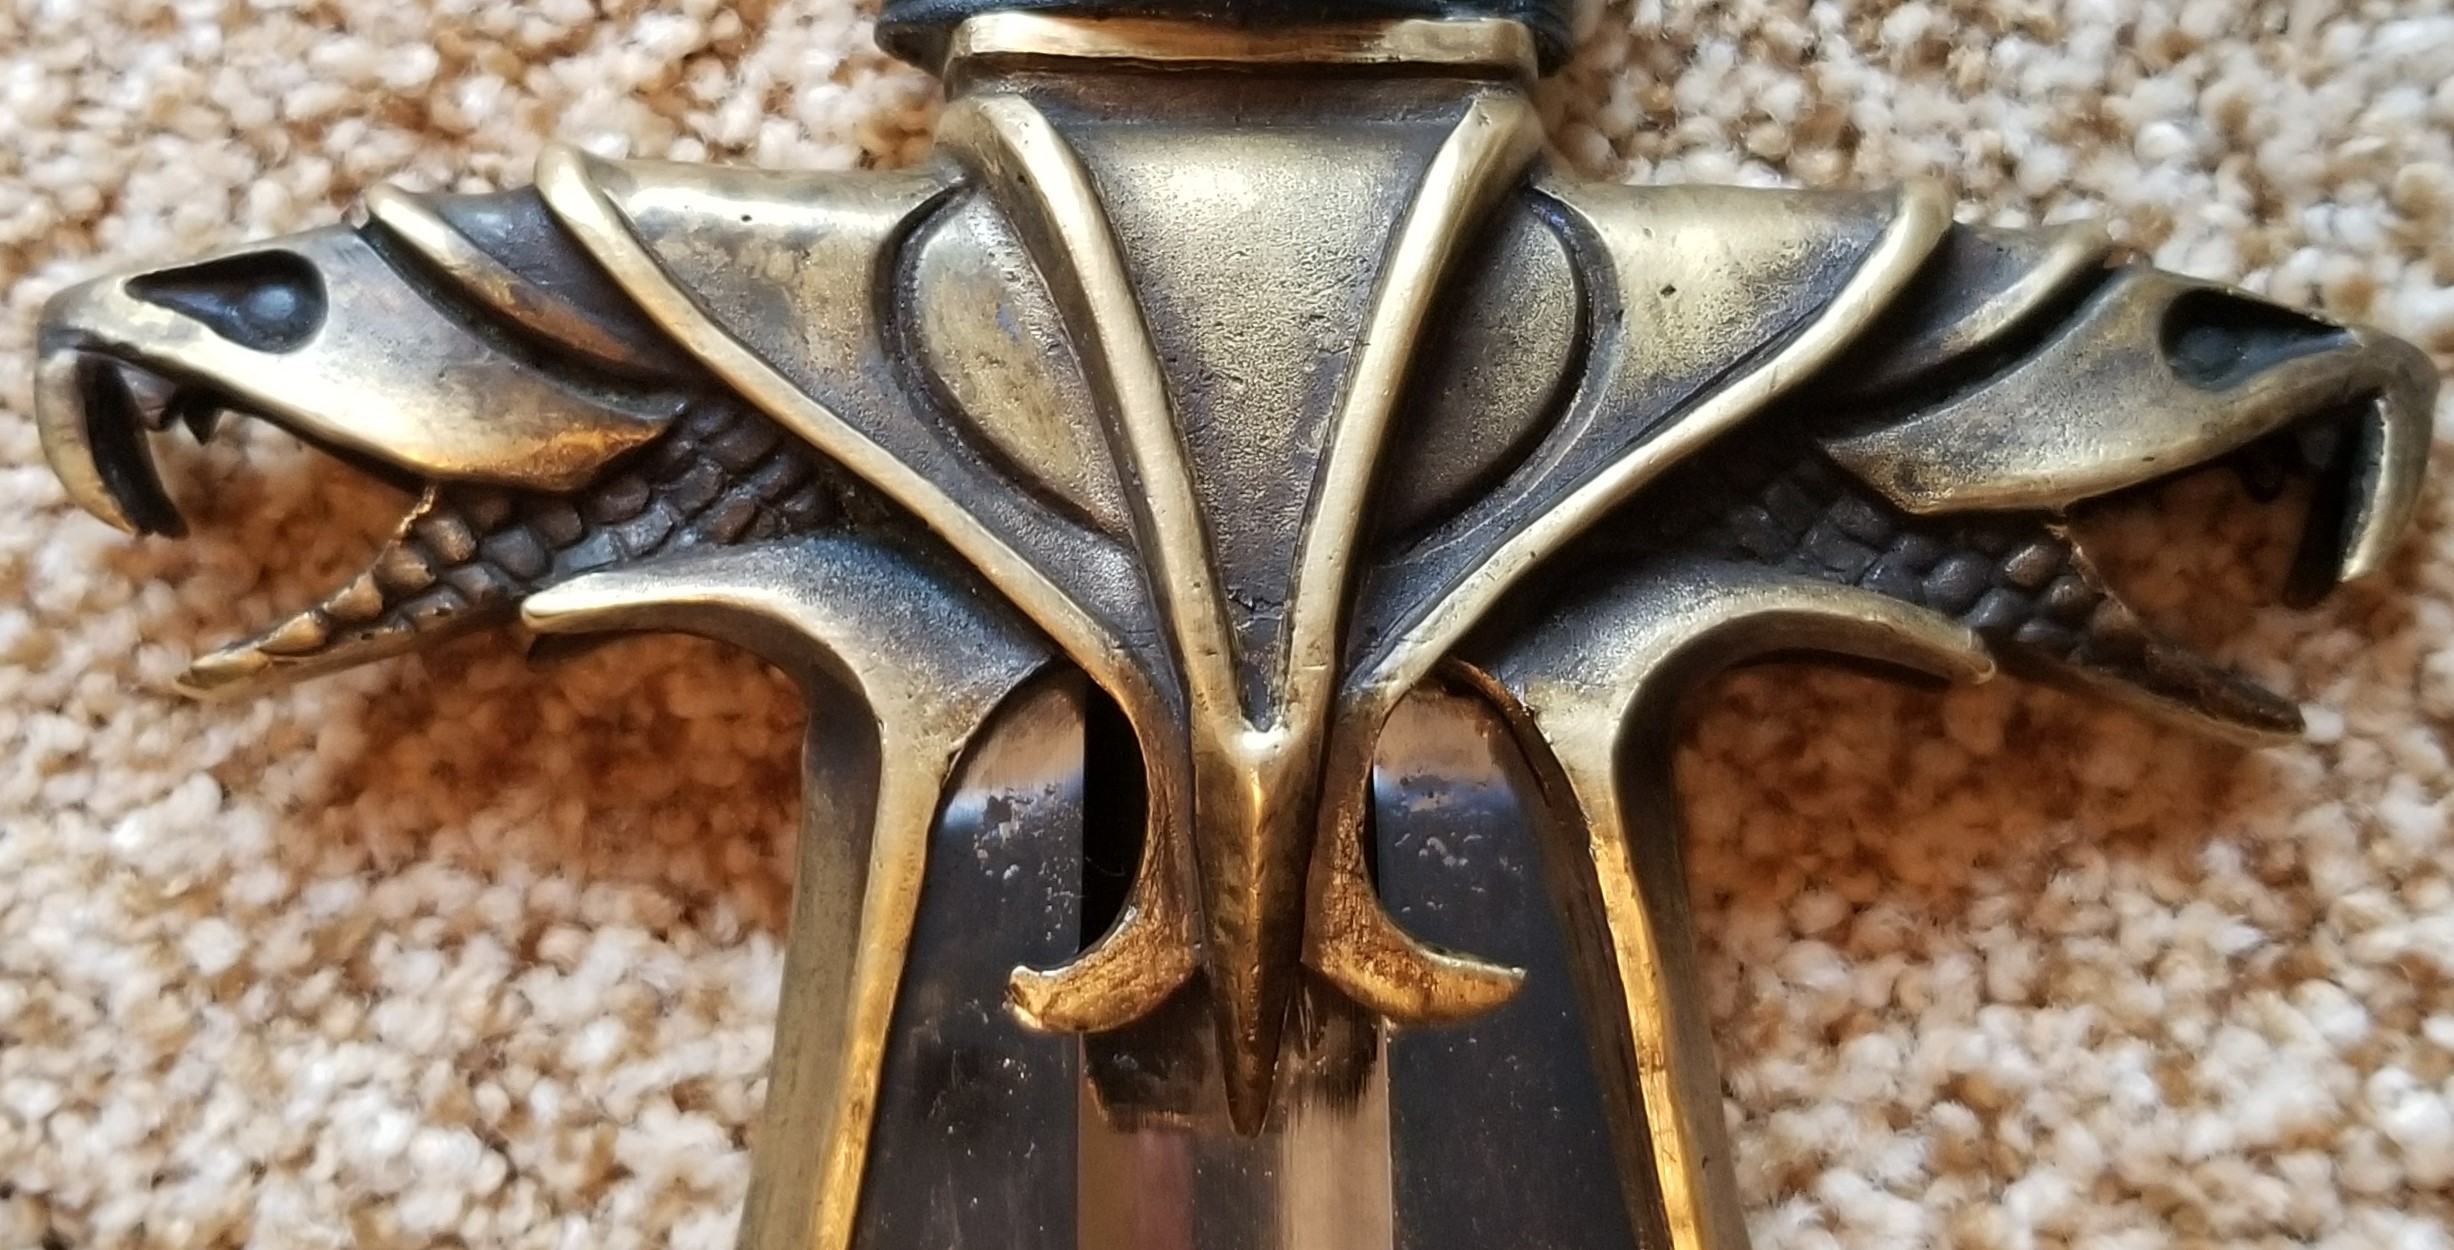 https://www.sword-buyers-guide.com/images/warmonger-sword7.jpg